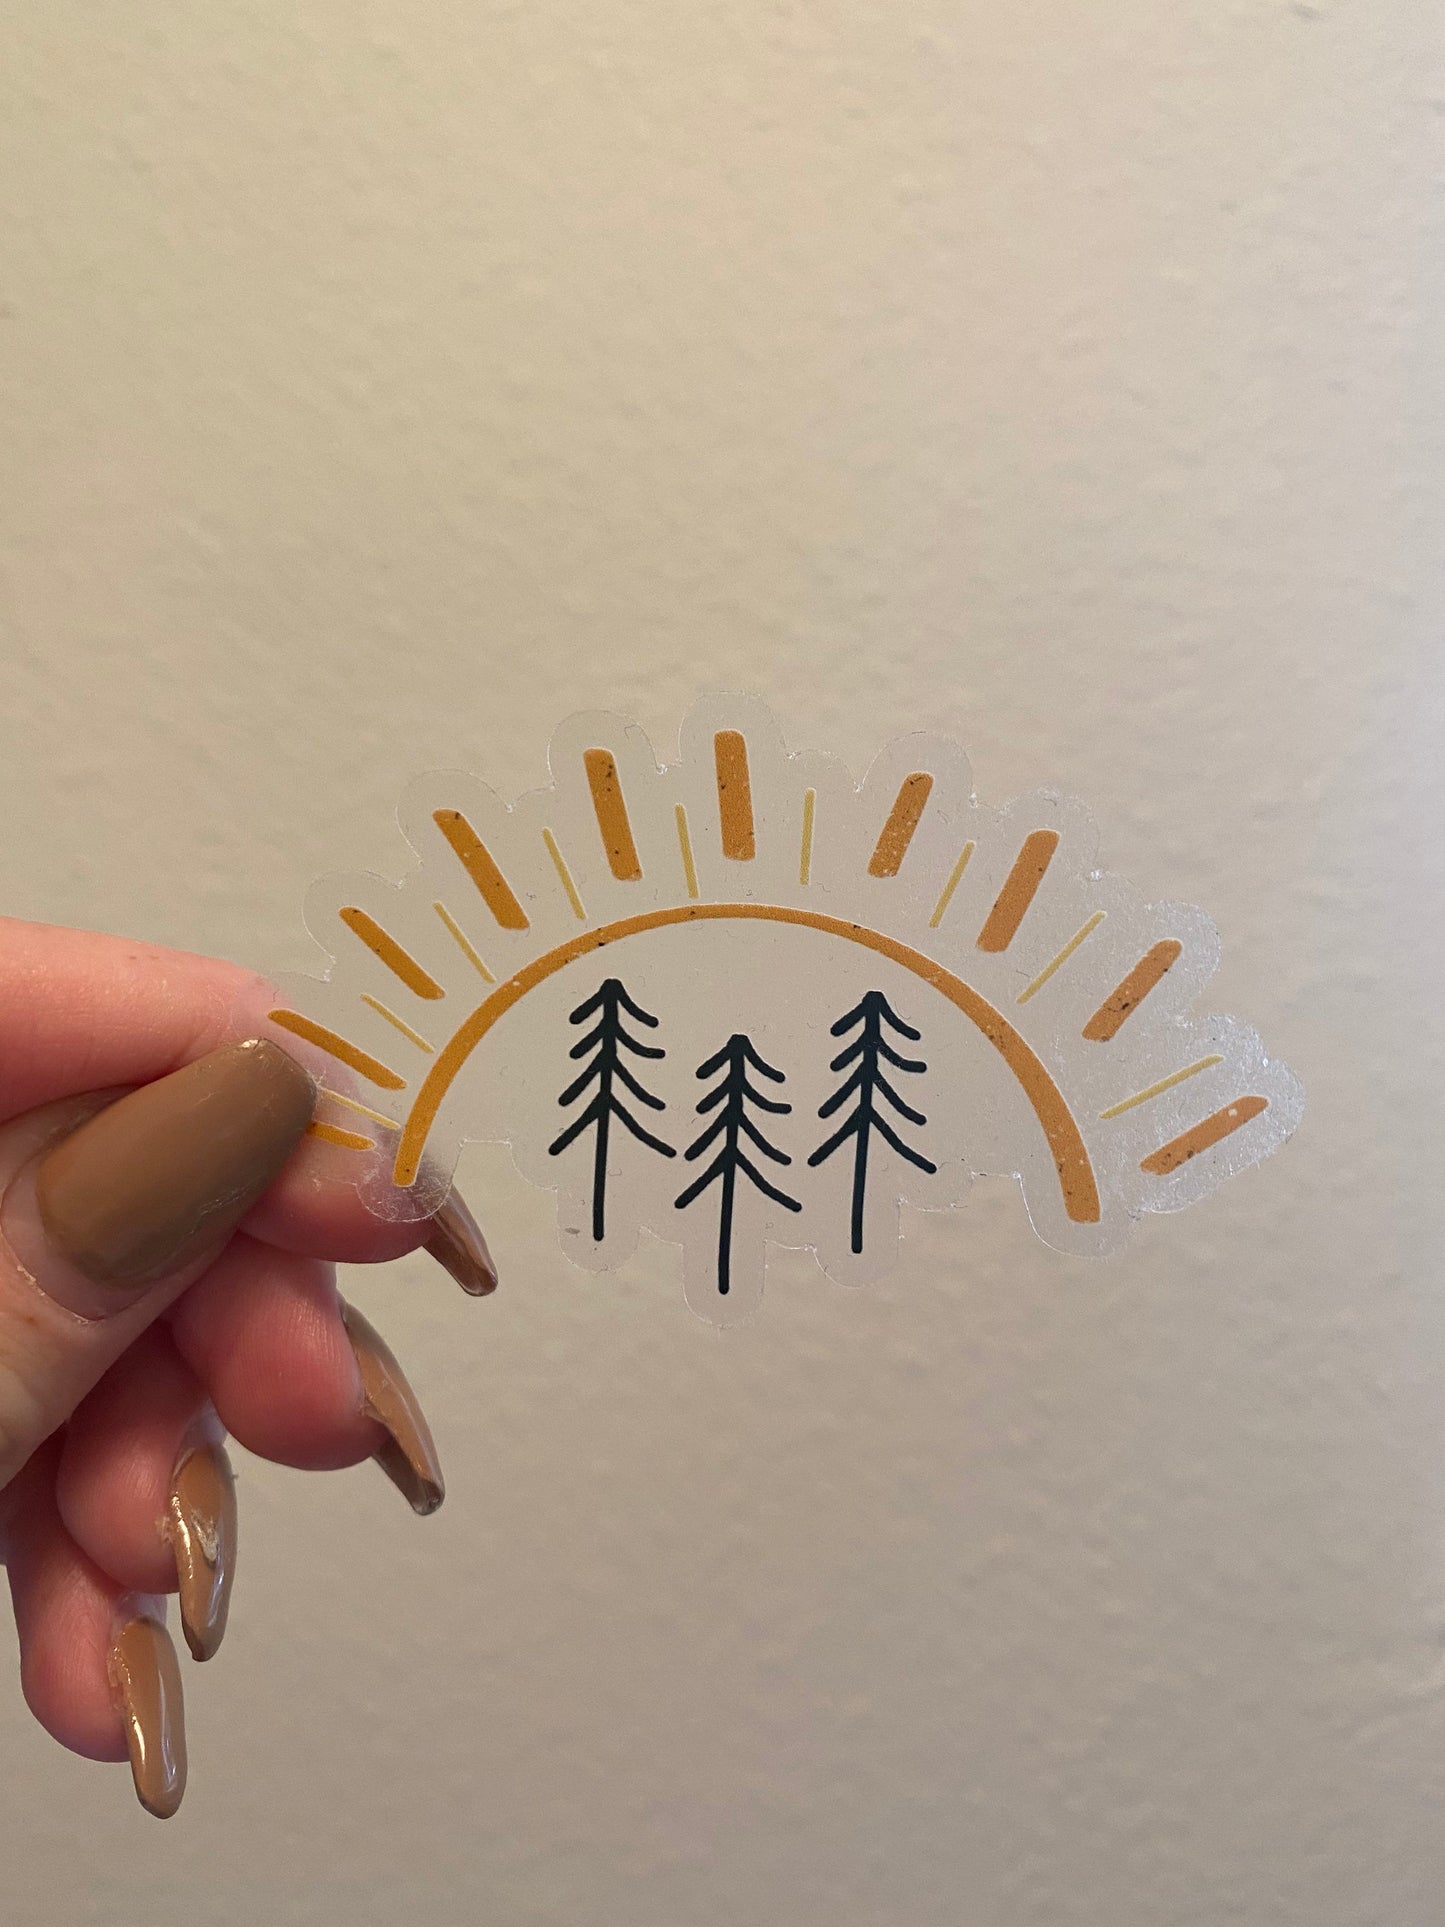 CLEAR Pine Tree Sun Waterproof Vinyl Sticker